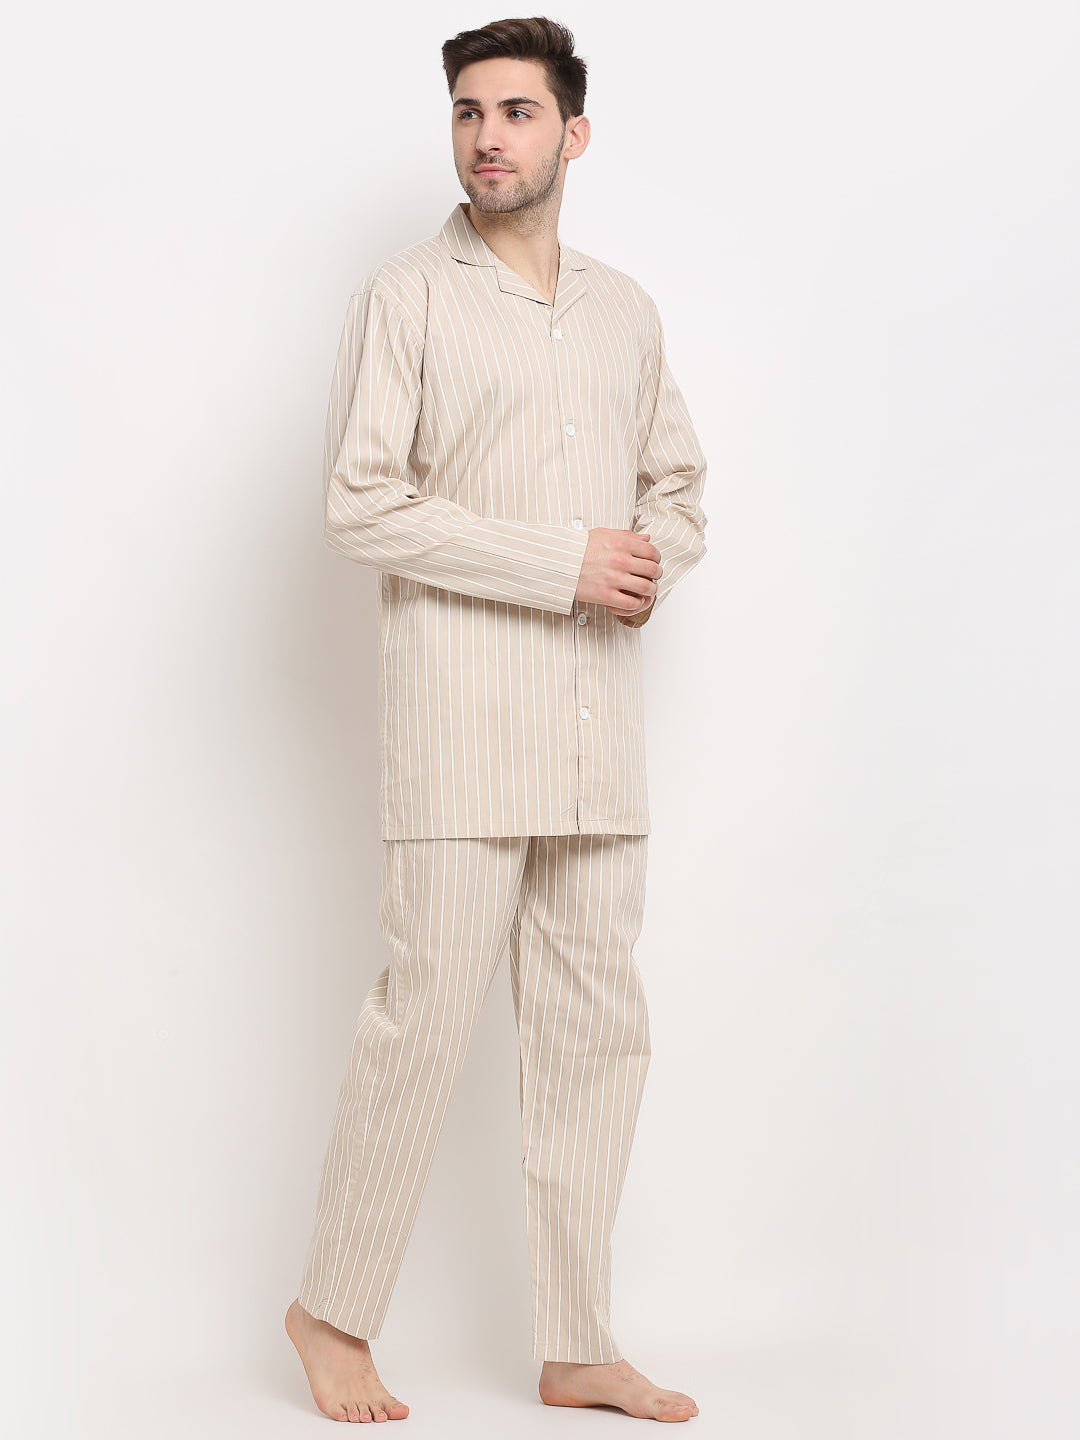 Jainish Men's Cream Cotton Striped Night Suits ( GNS 002Cream ) - Distacart